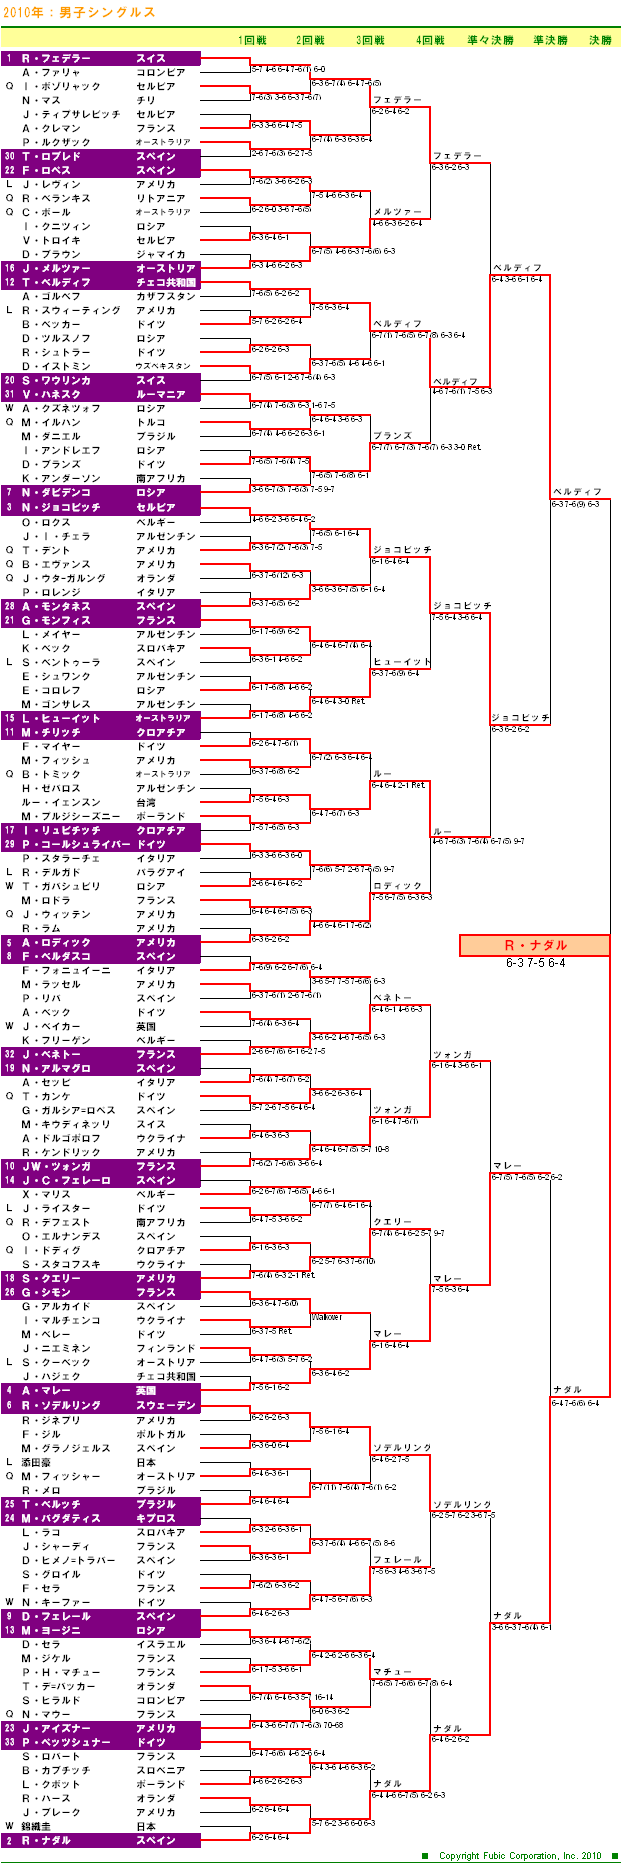 ウィンブルドンテニス2010　男子シングルスドロー表